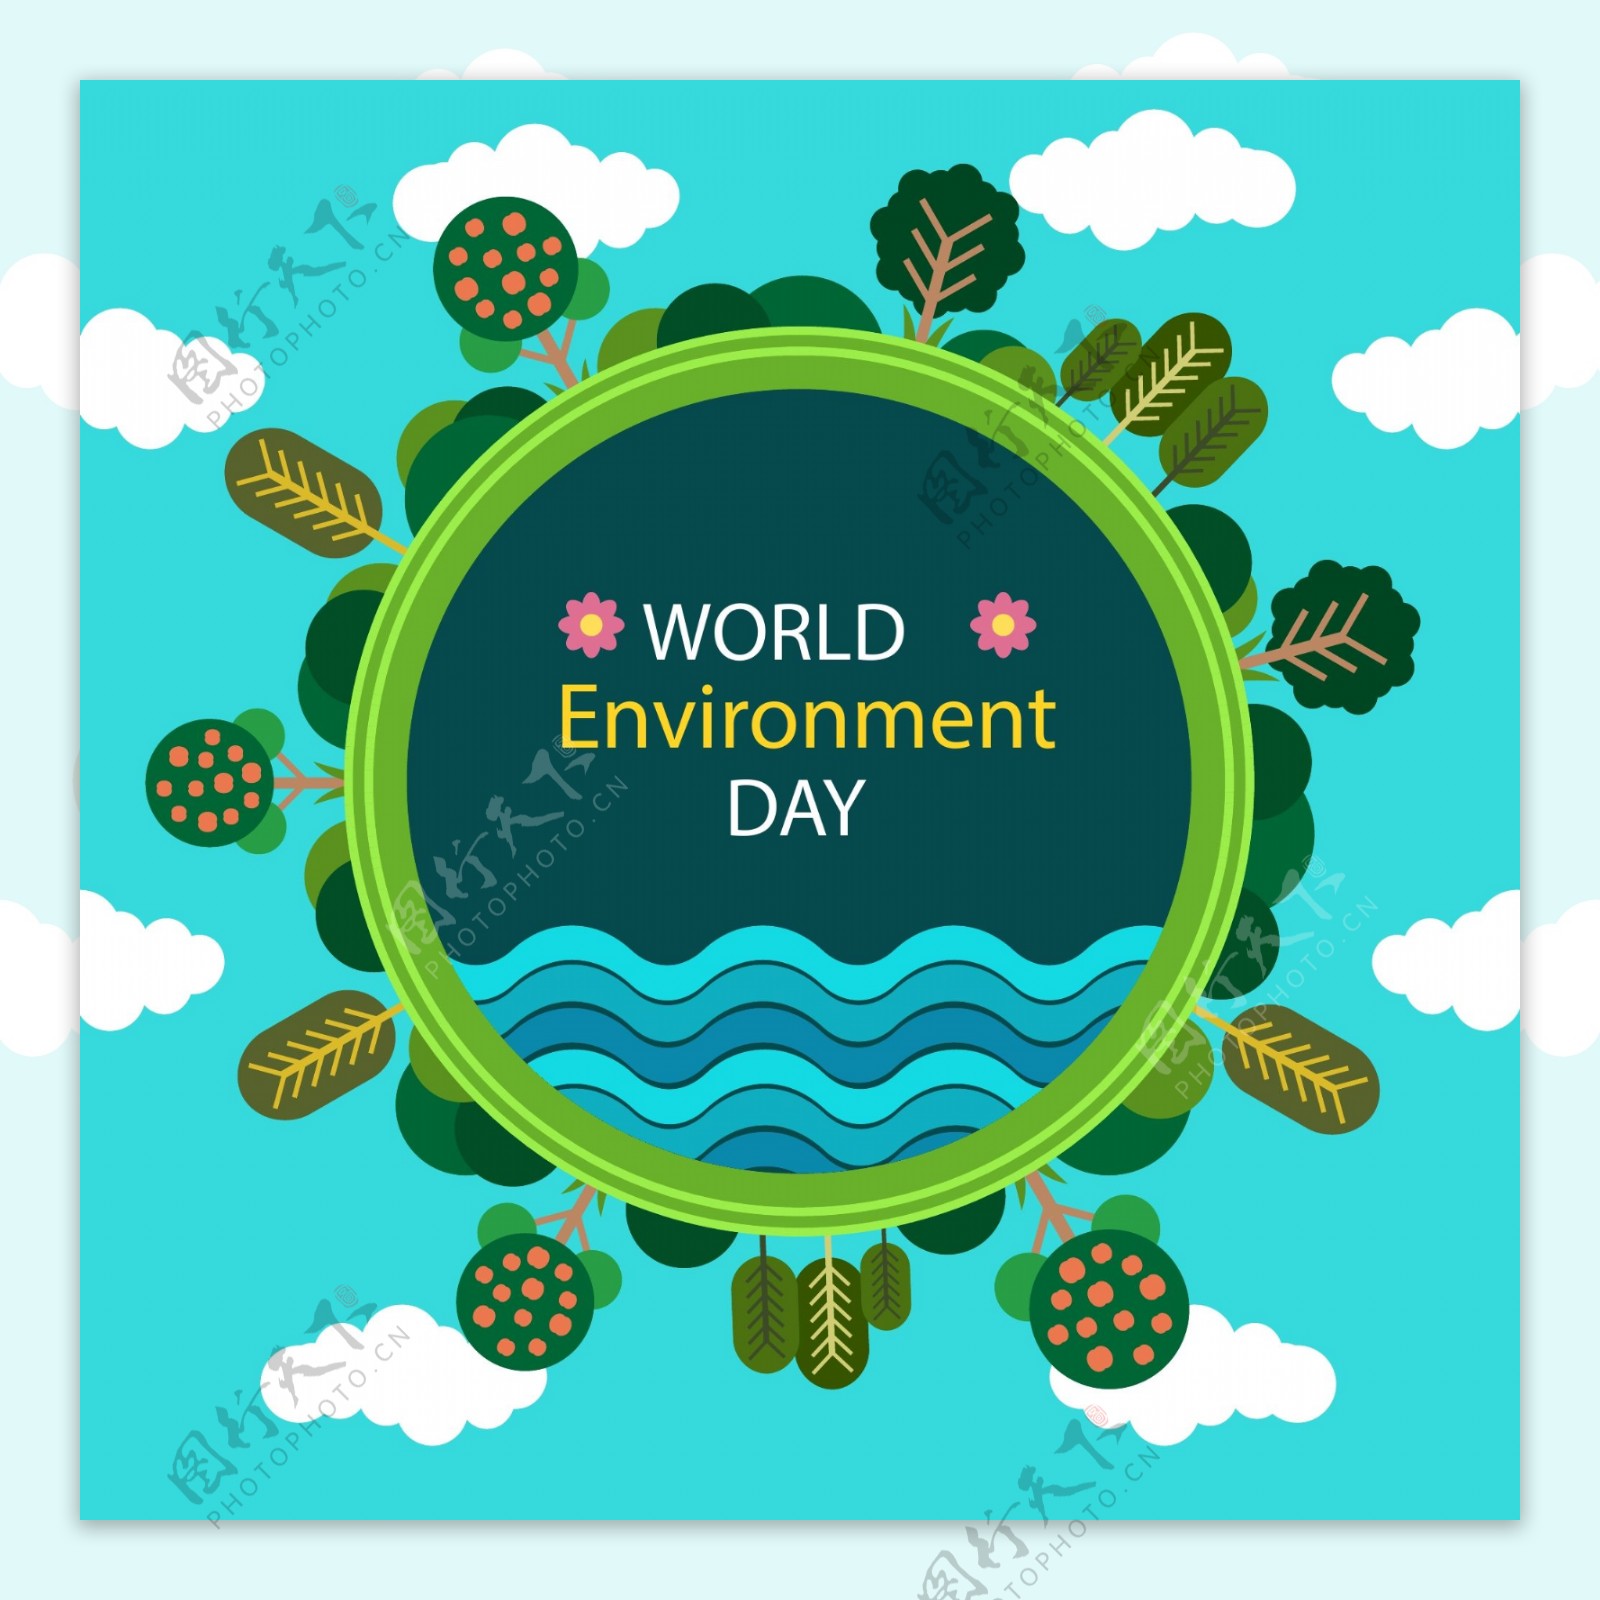 世界环境保护日海报